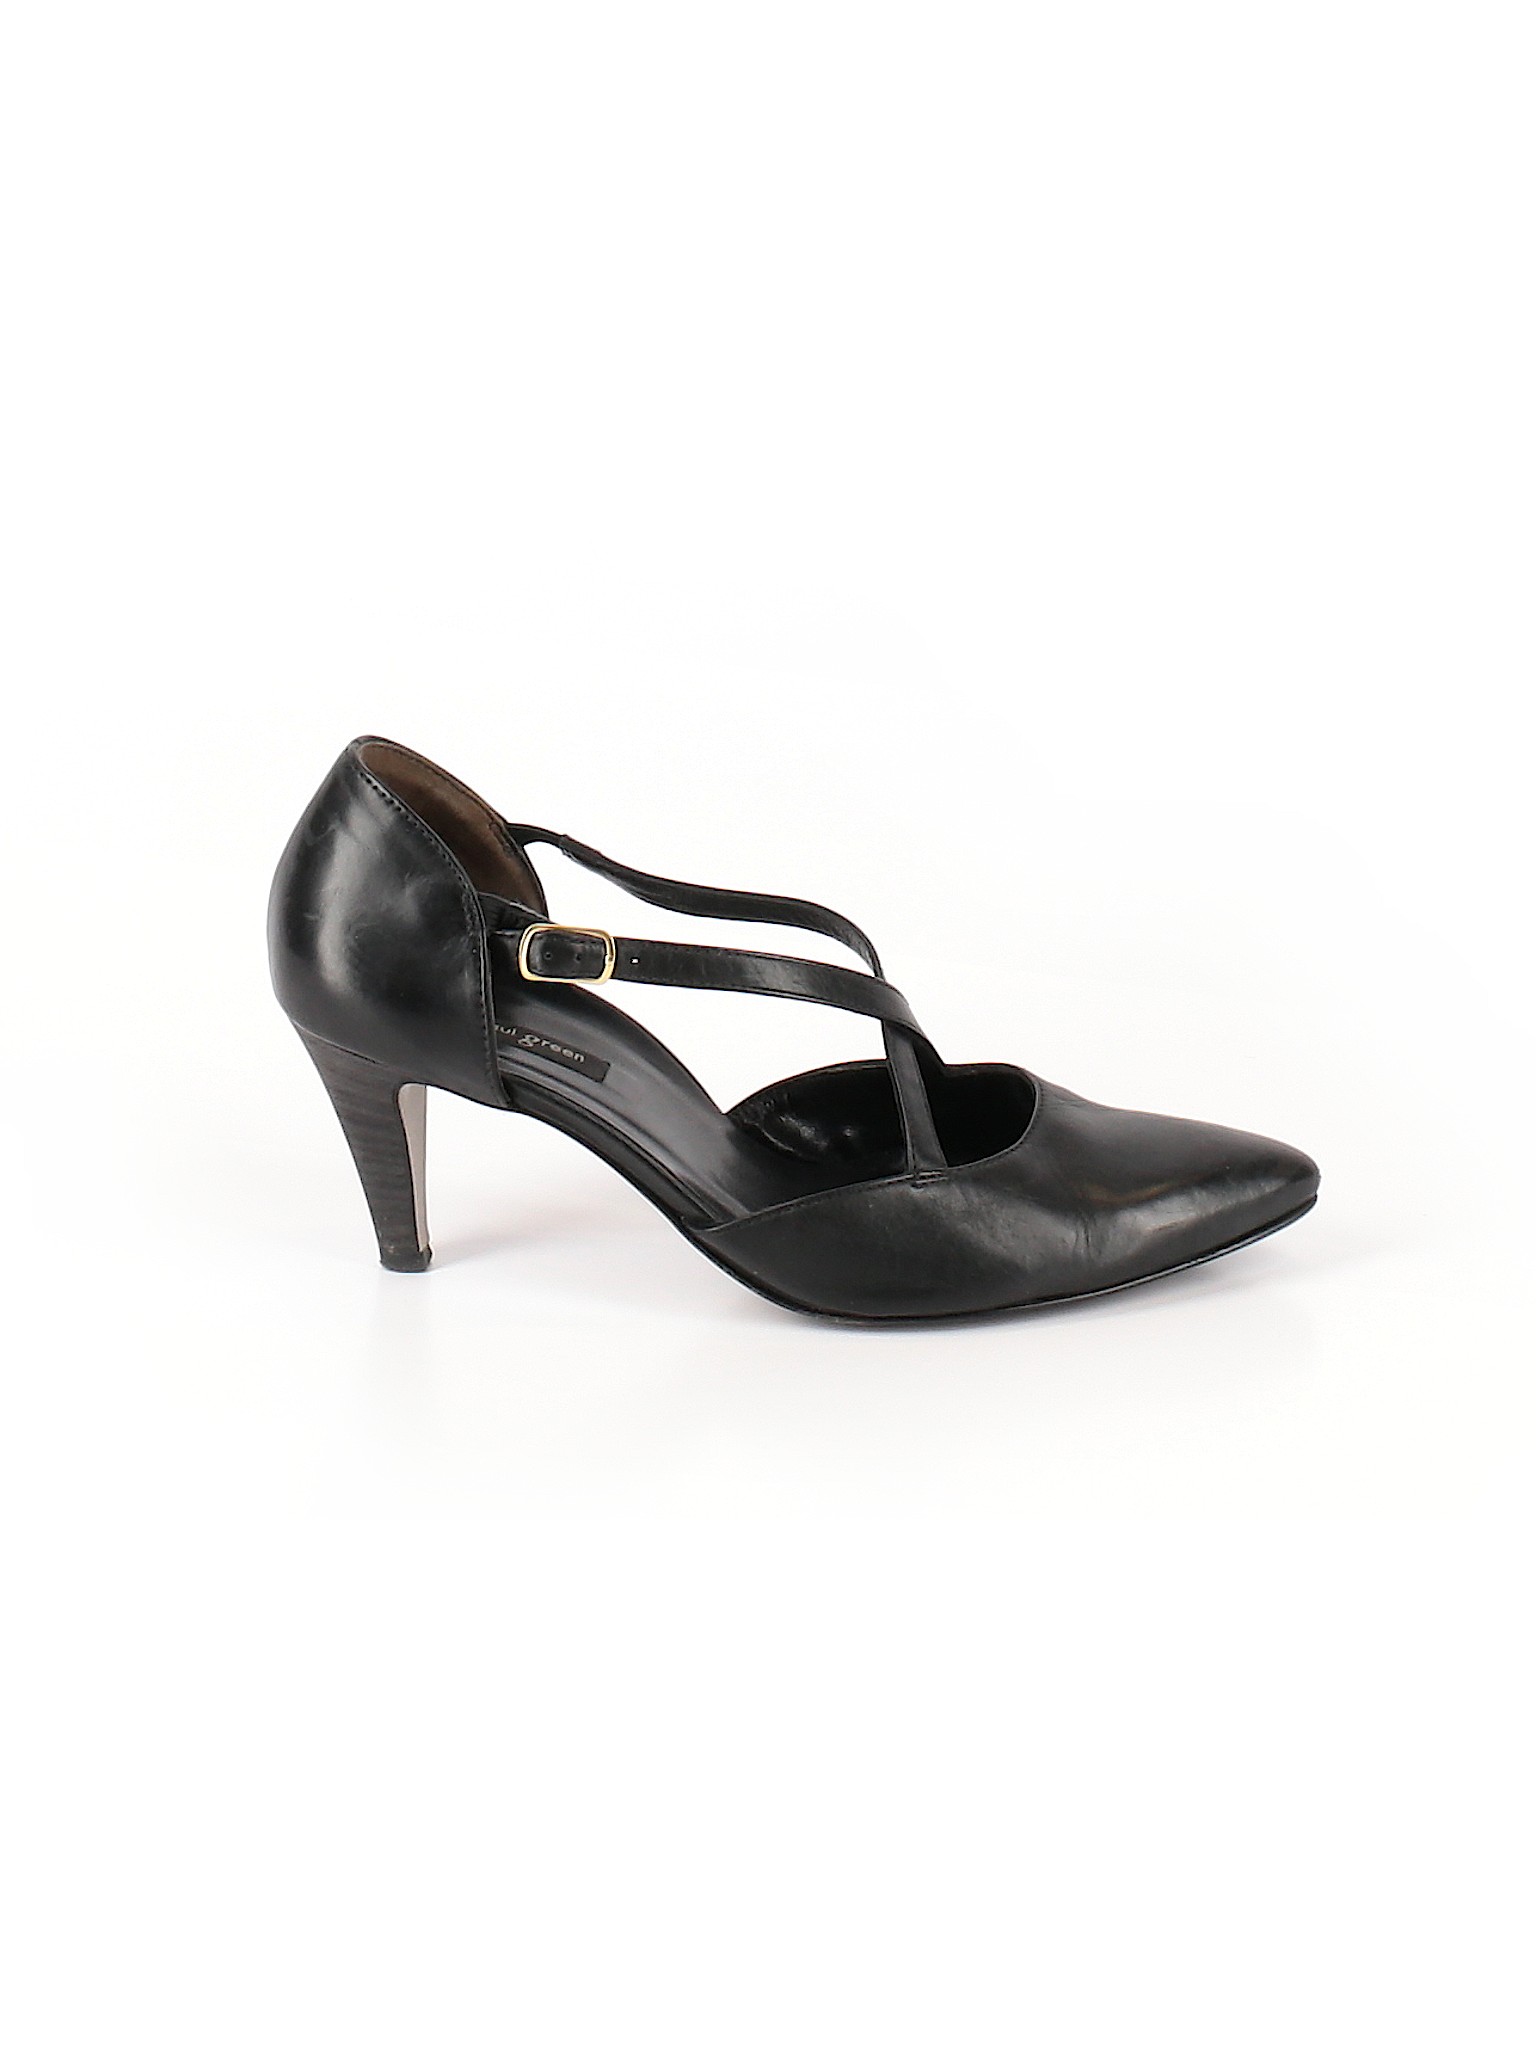 Paul Green Women Black Heels US 7 | eBay